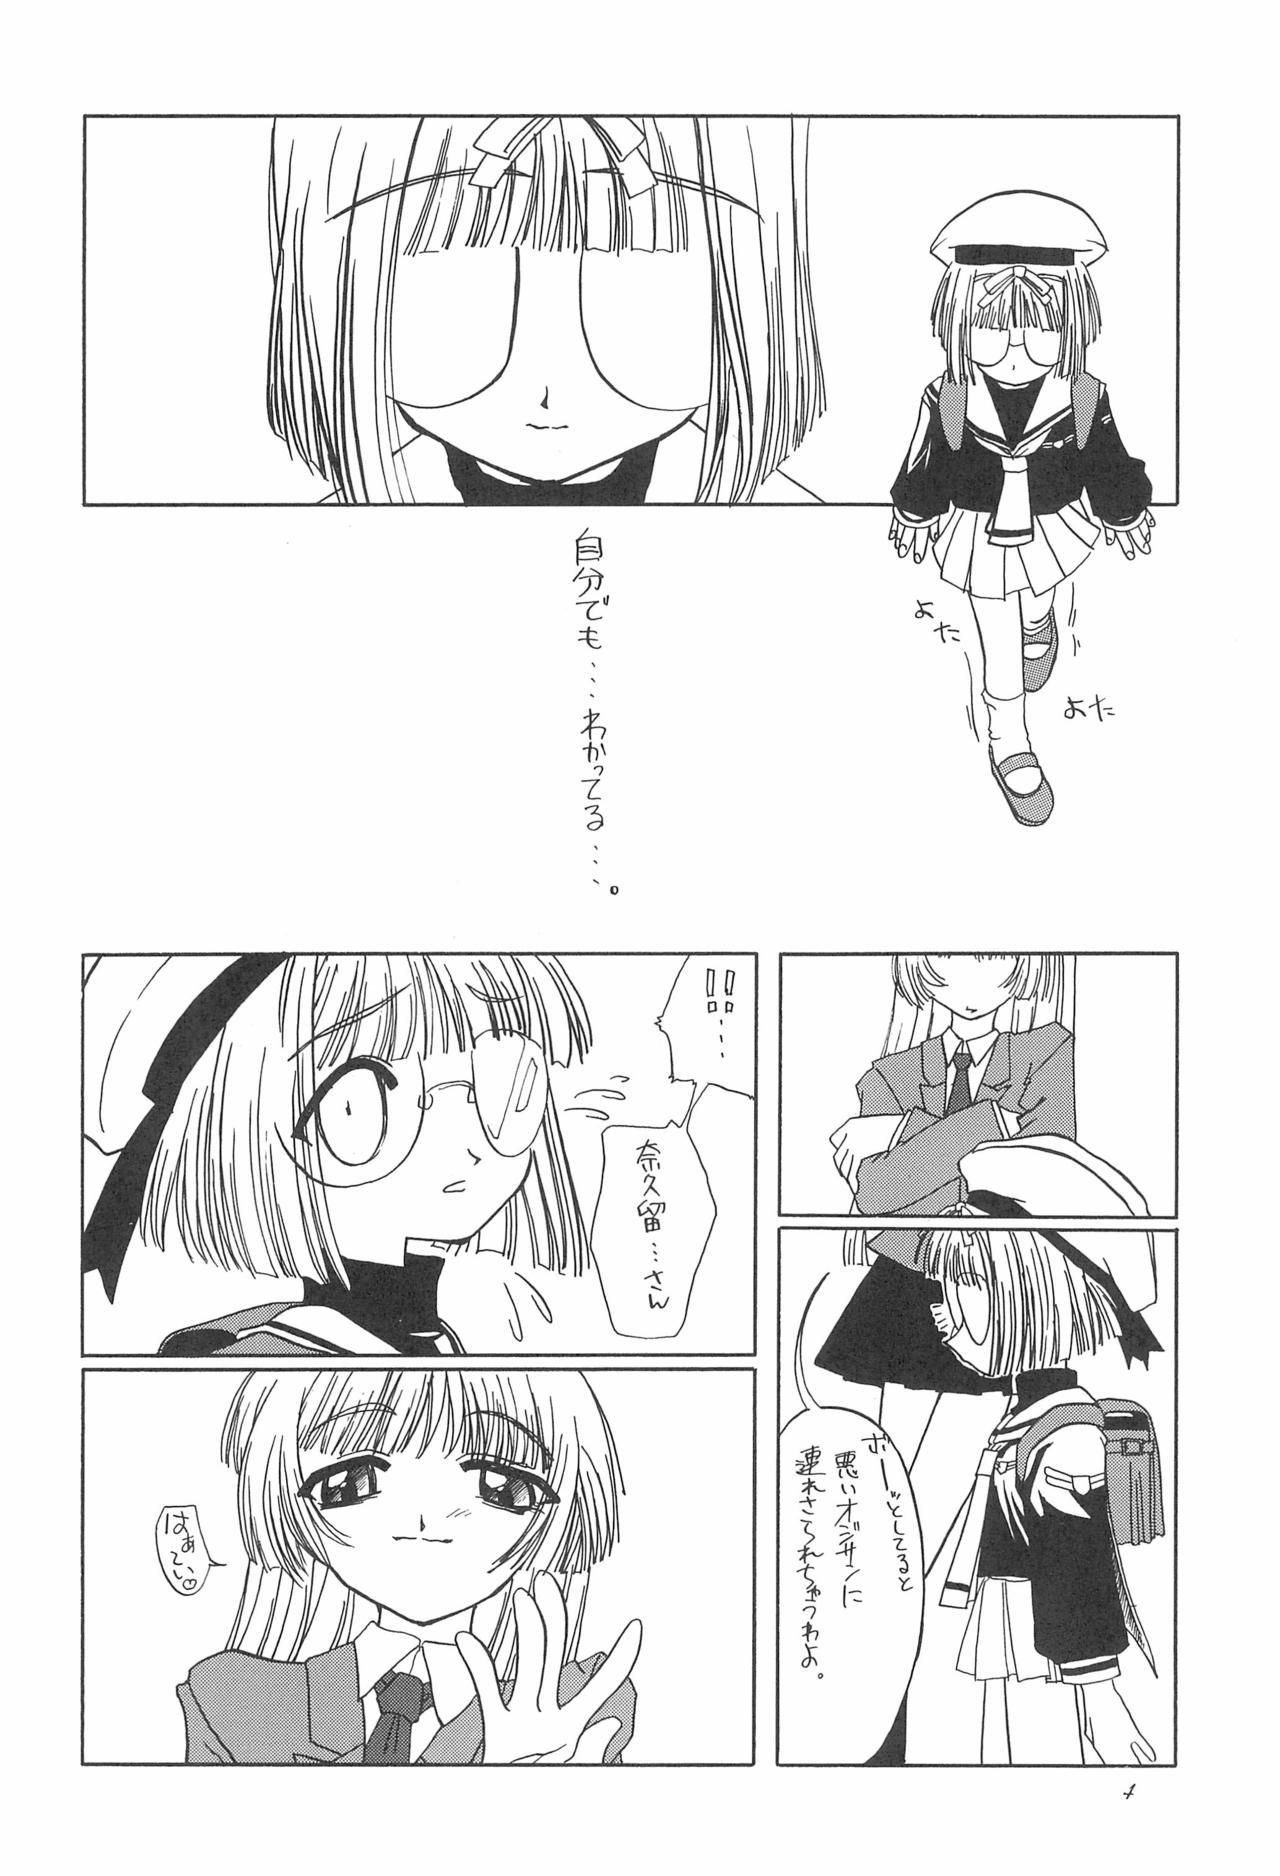 Cutie 8th of ace - Cardcaptor sakura Anime - Page 8